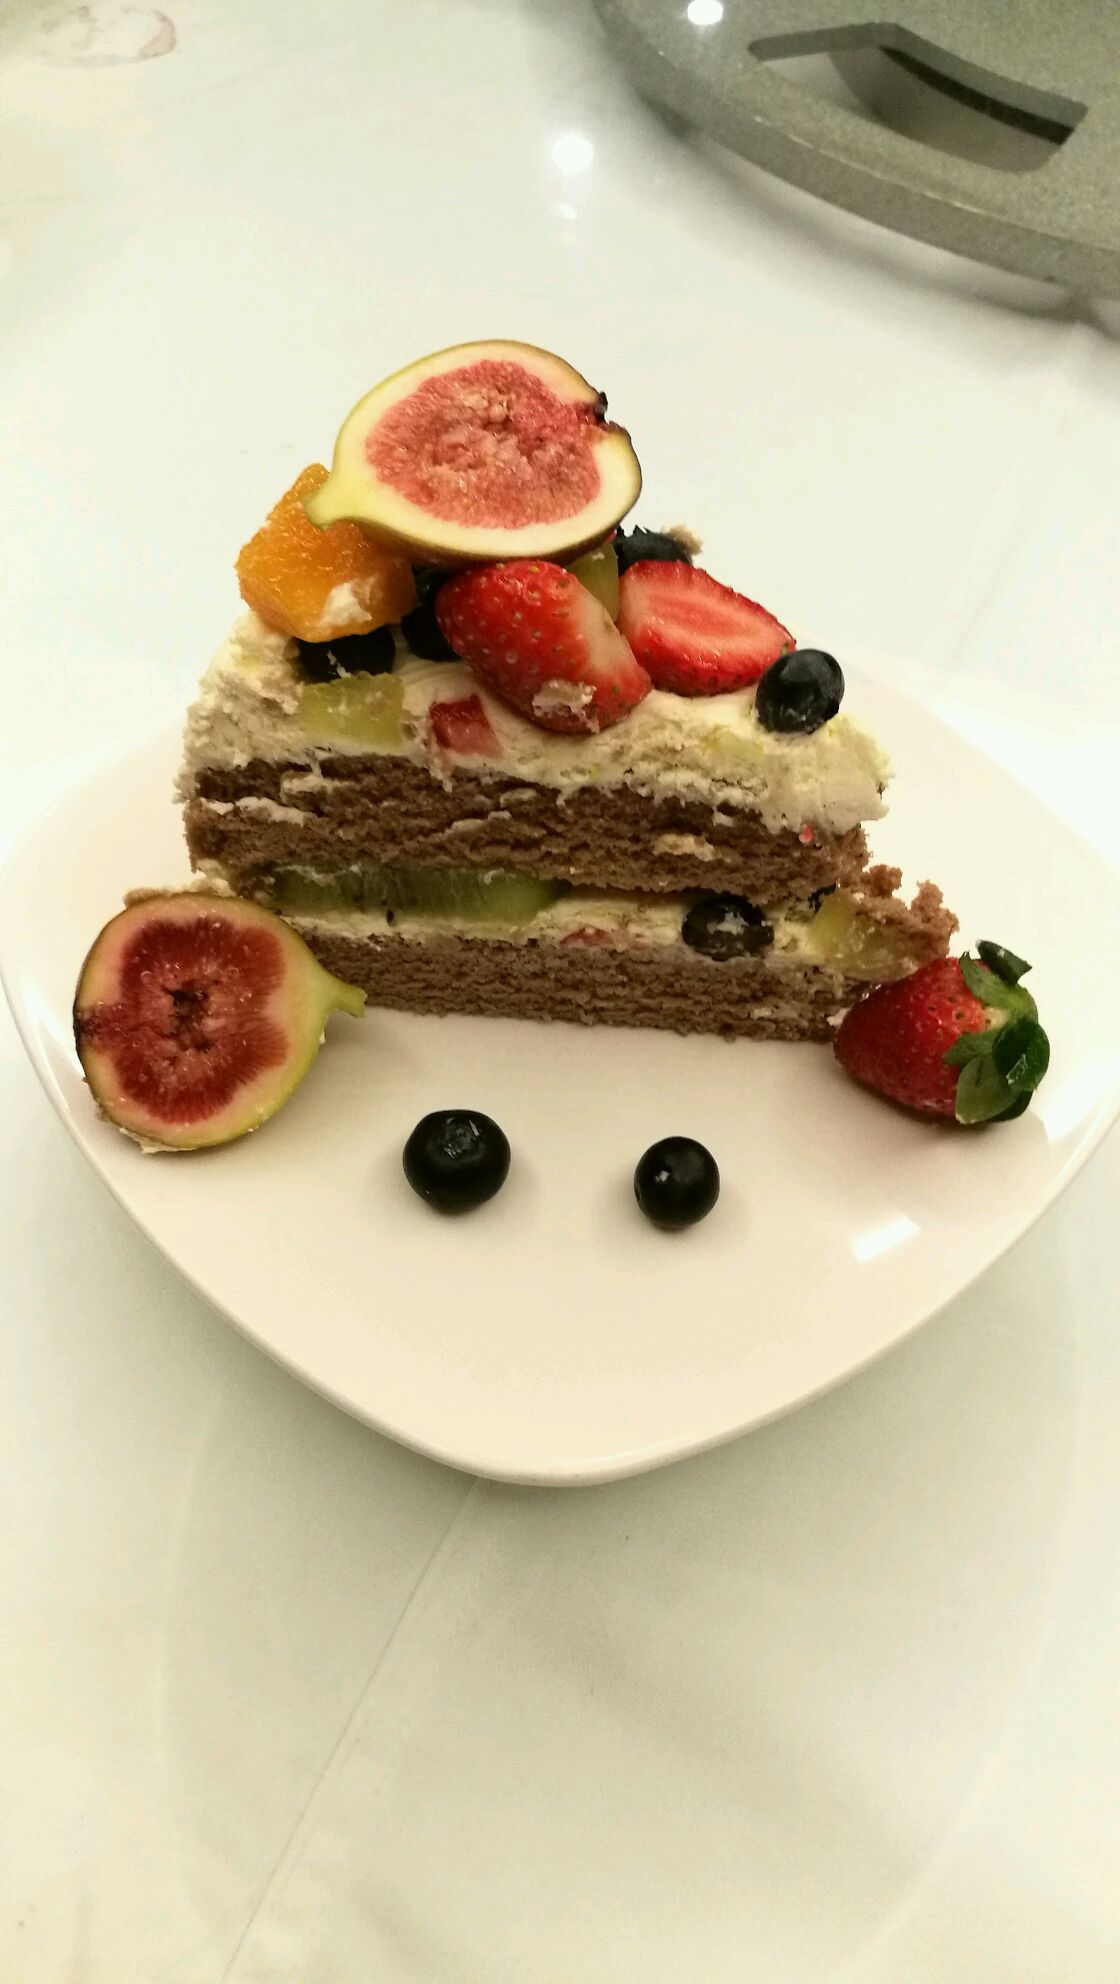 爱厨房的幸福之味: 水果裸蛋糕 Fruits Naked Cake